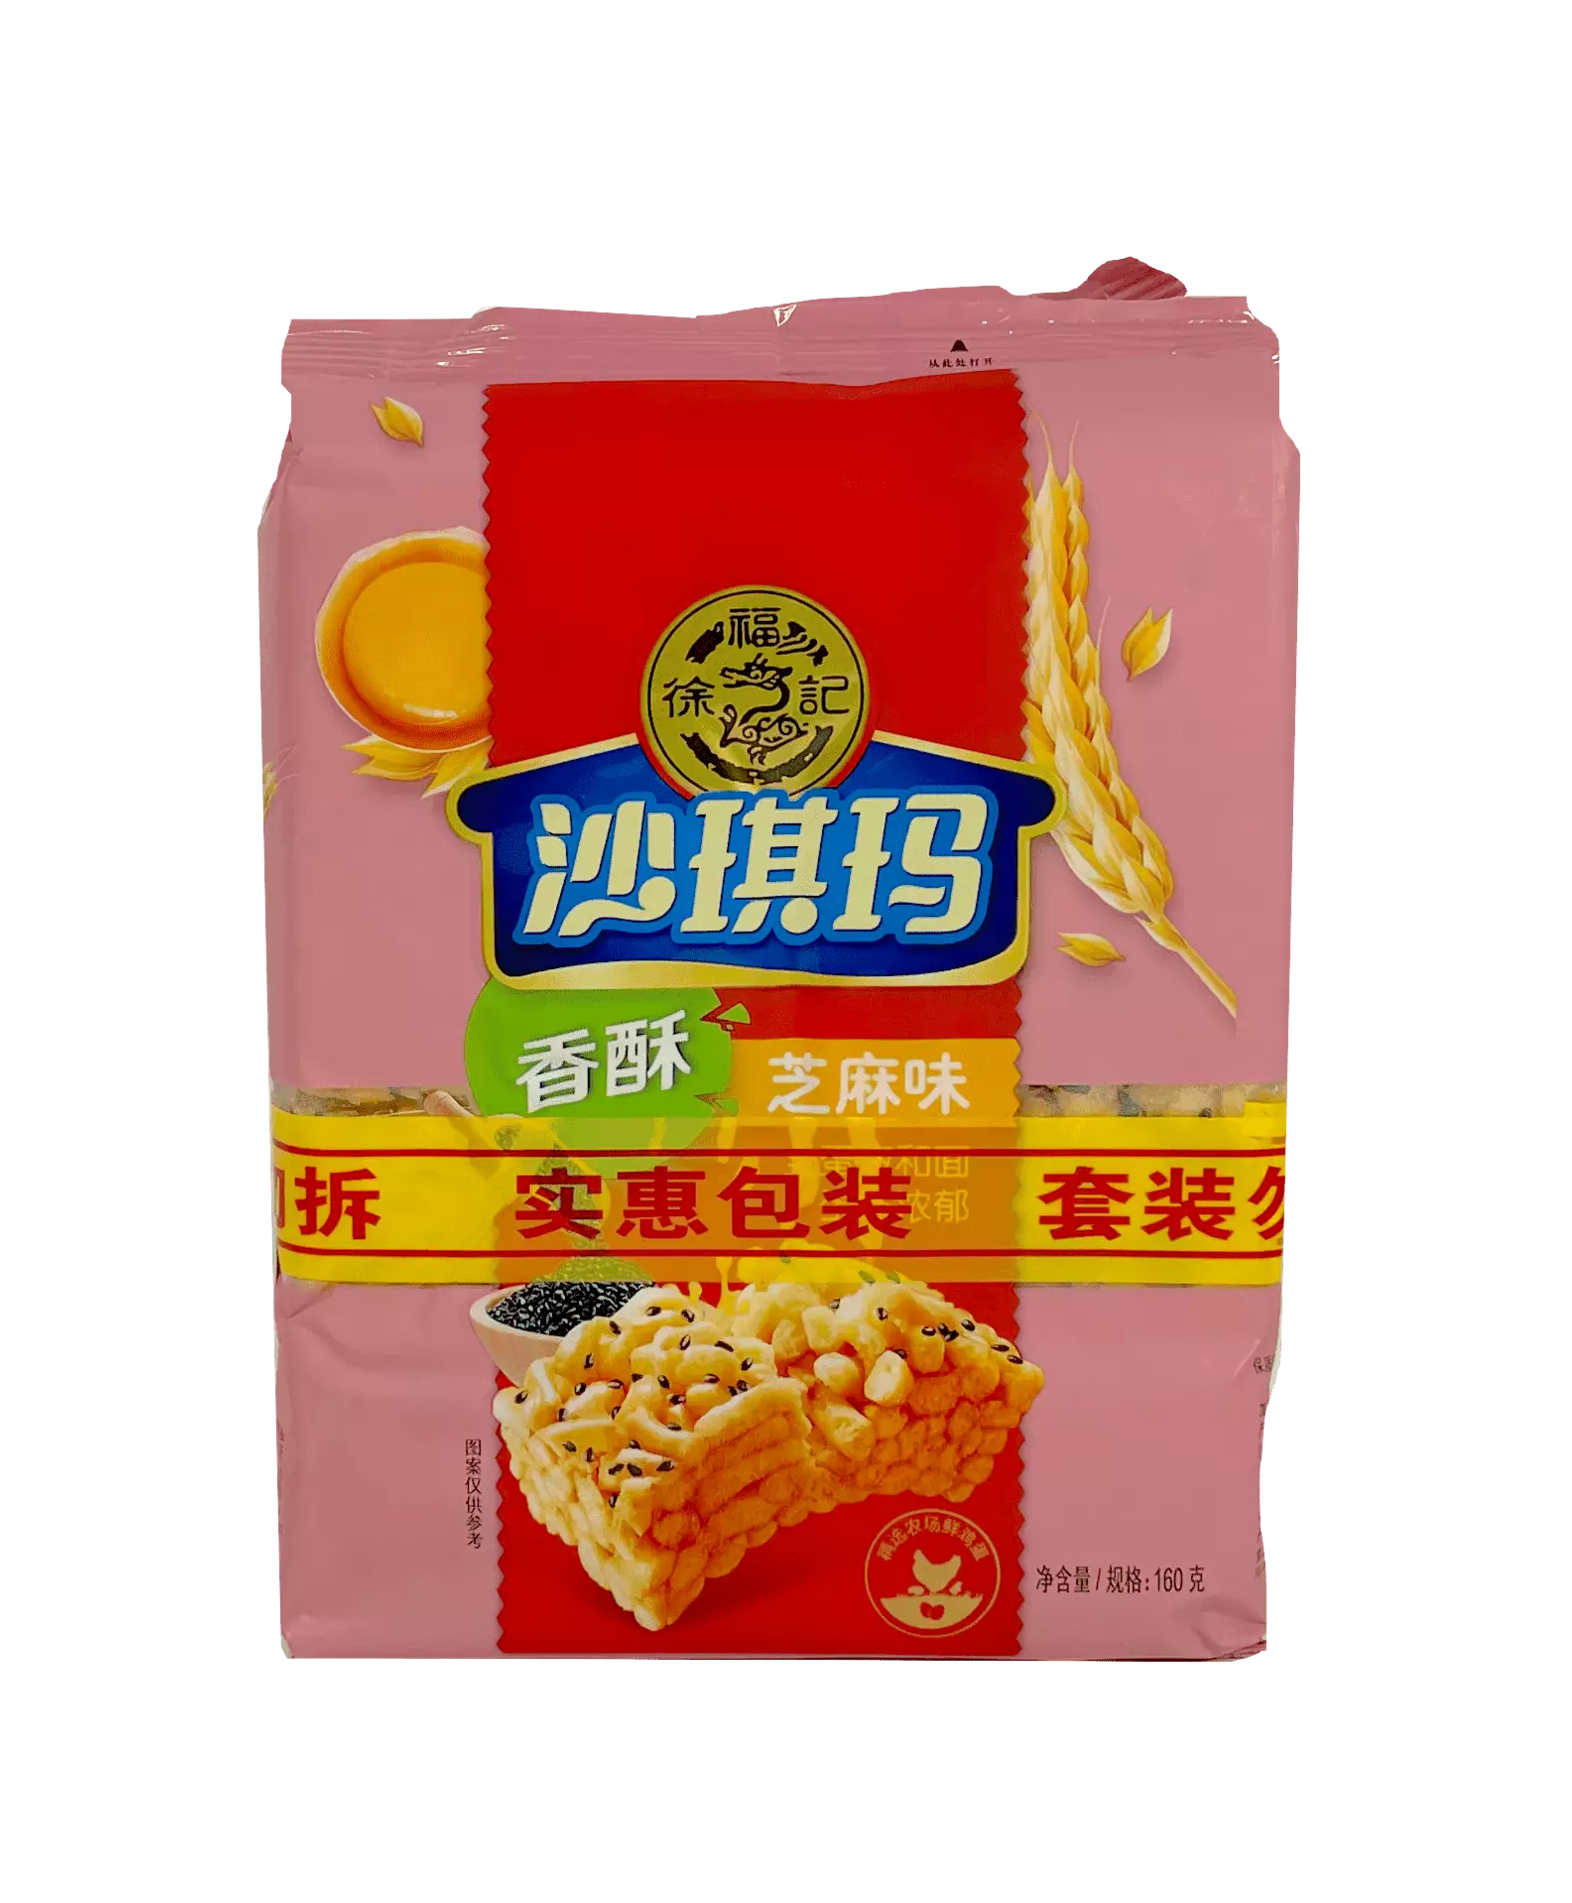 沙琪玛 香酥 芝麻风味 160gx2st/组 徐福记 中国